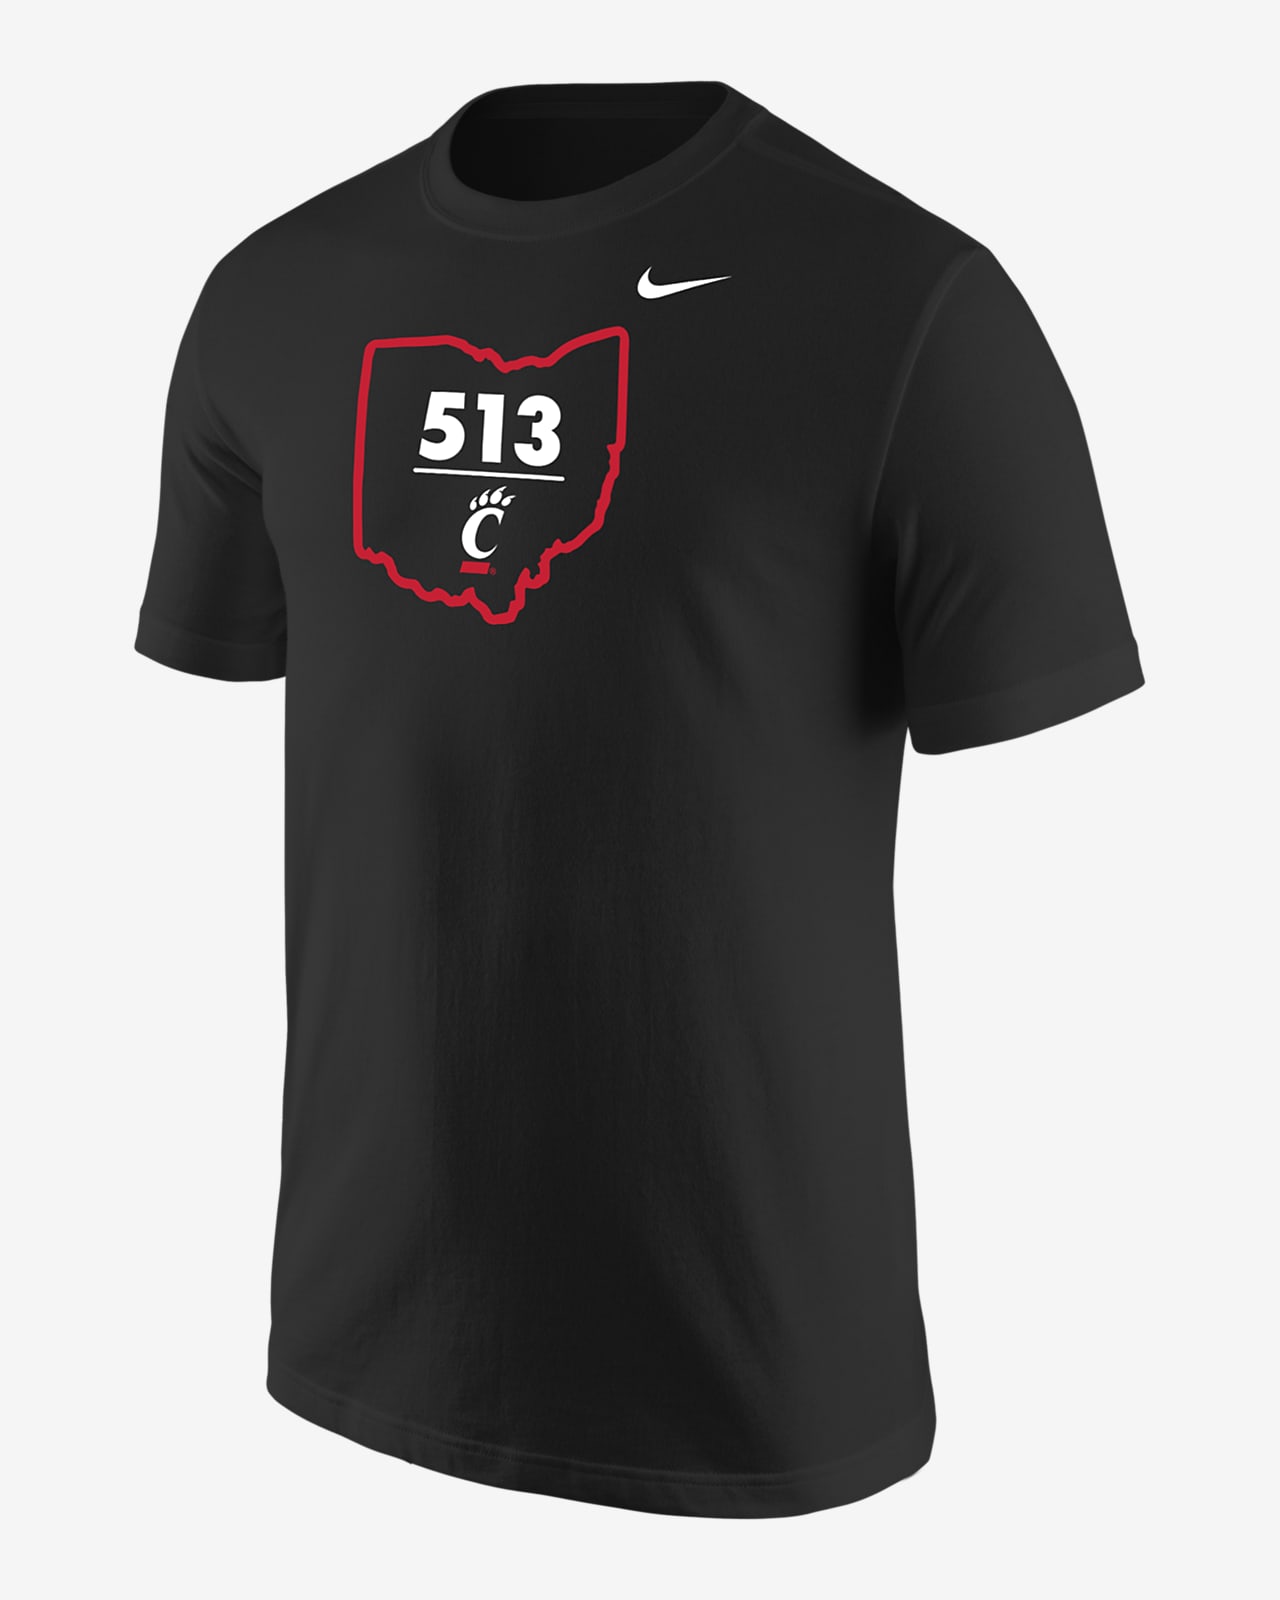 Cincinnati Men's Nike College T-Shirt